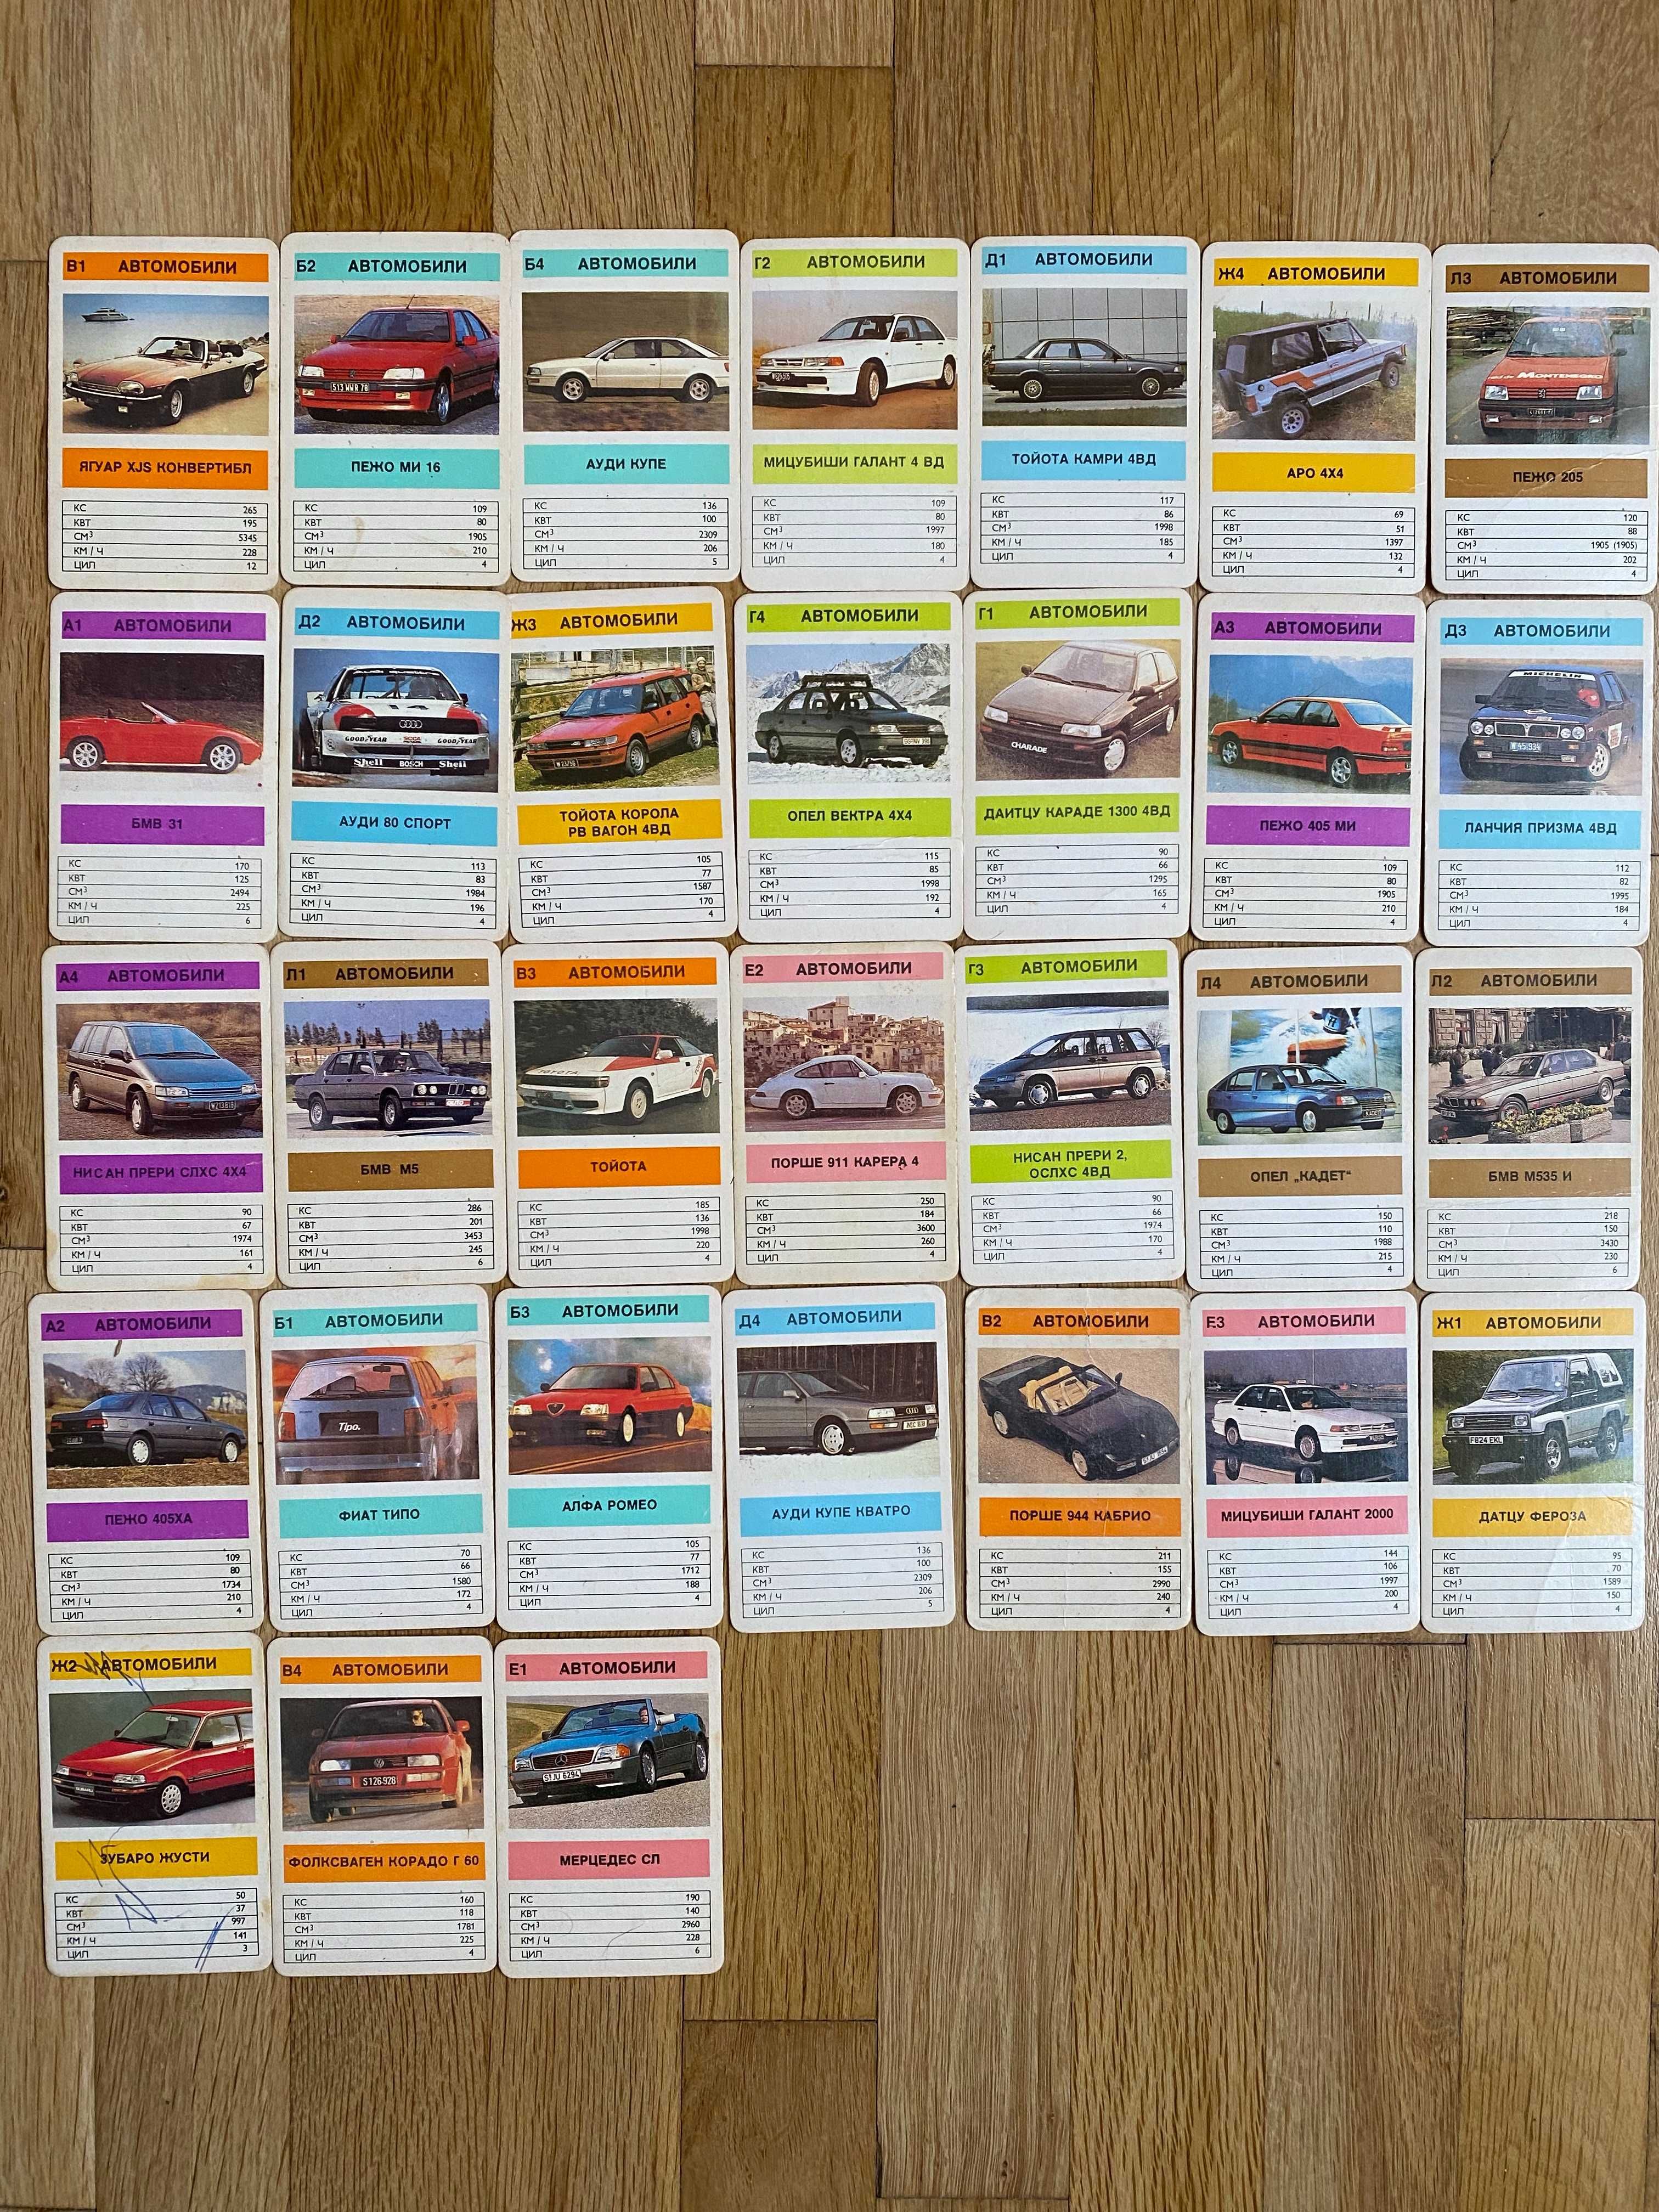 Картинки и карти с коли (Turbo + други)